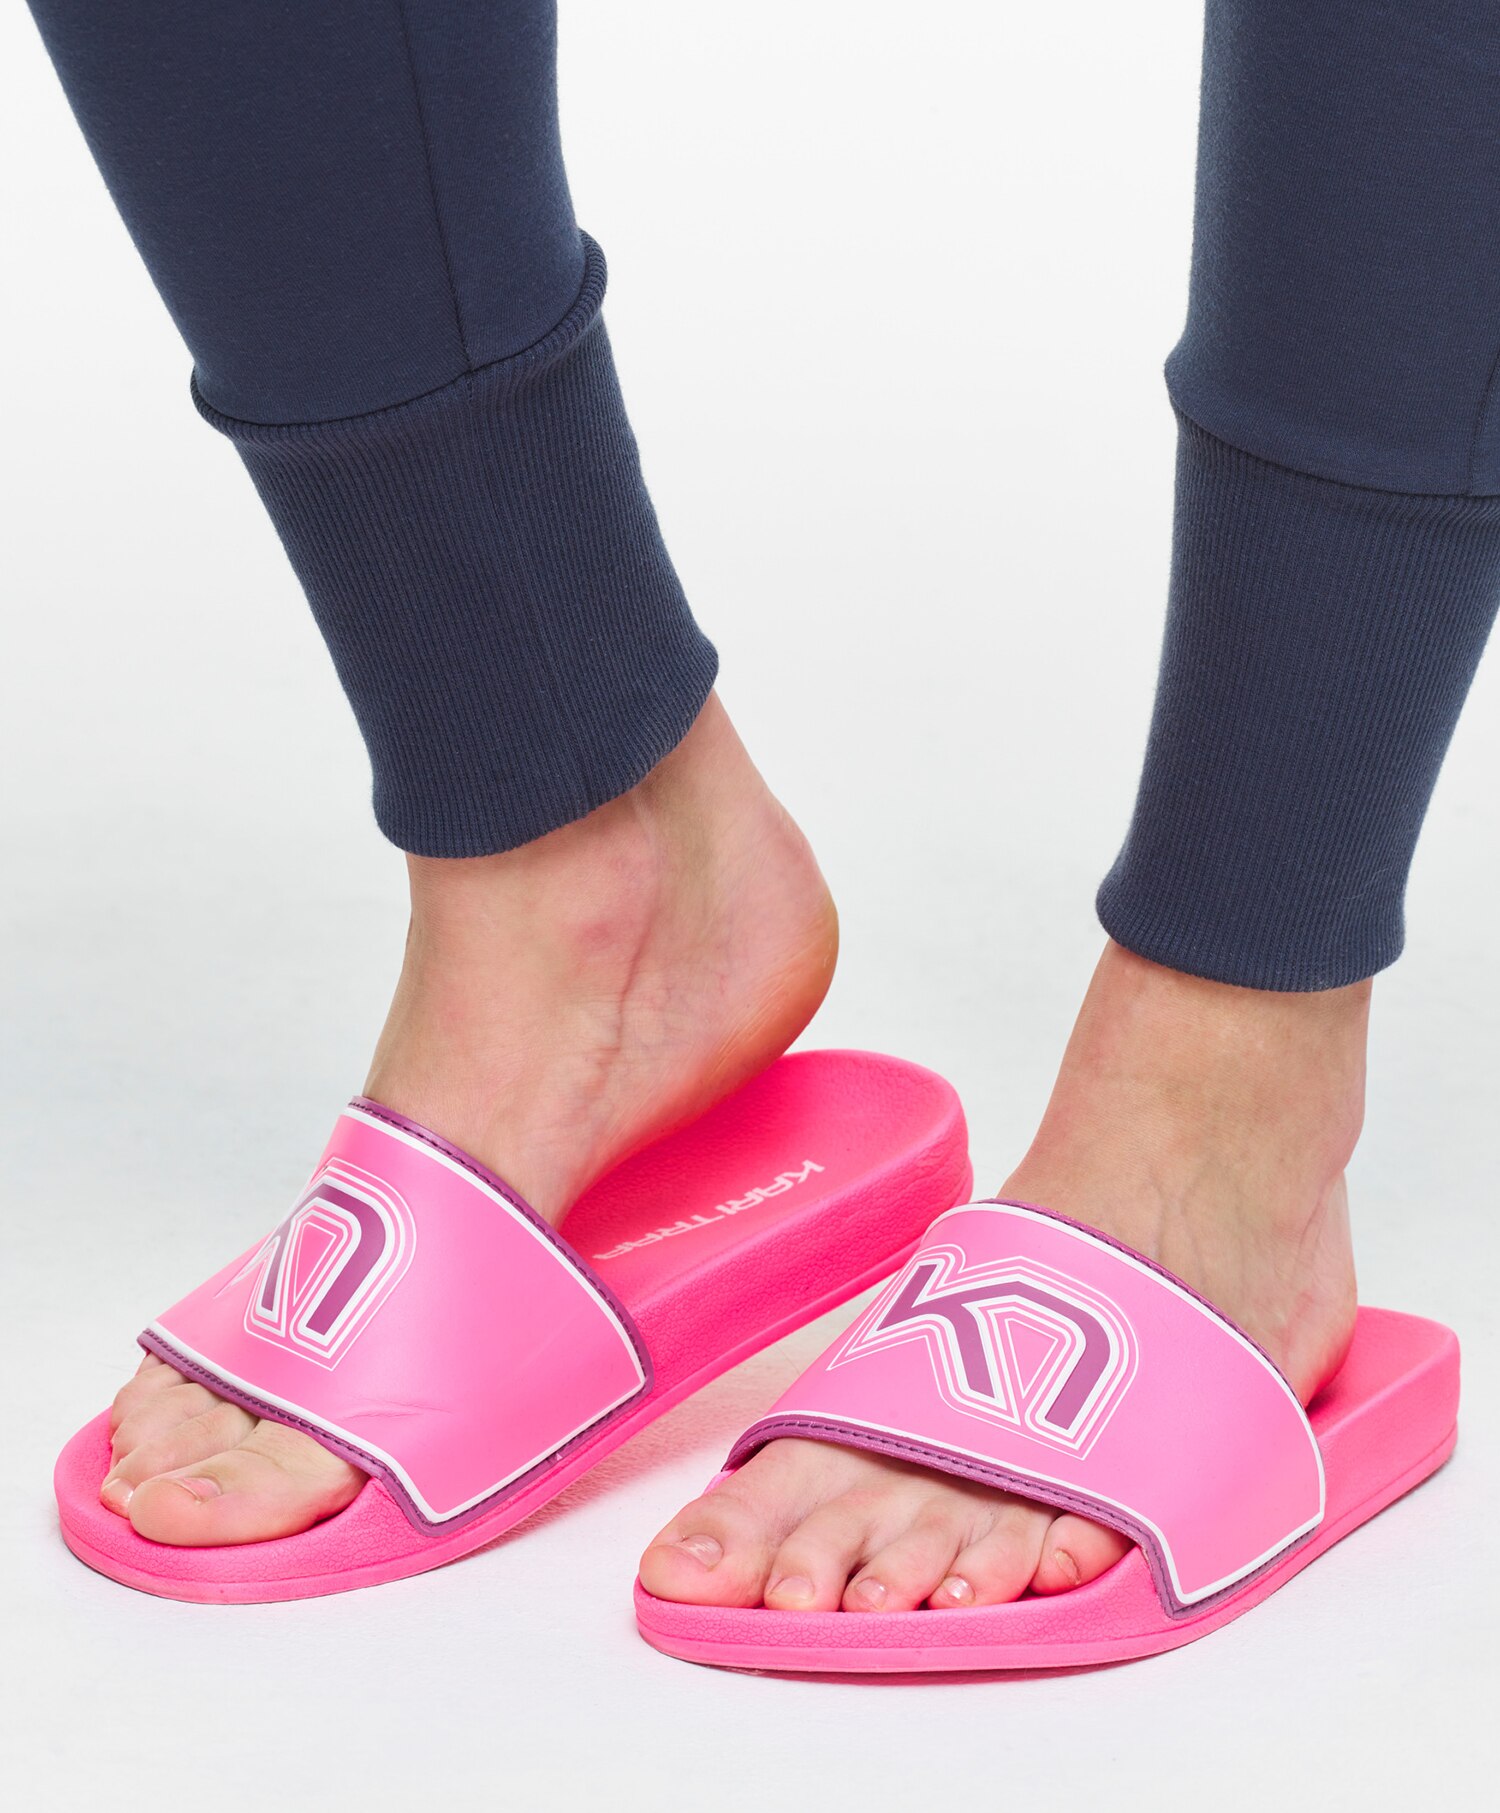 Kari Traa Kjapp slippers